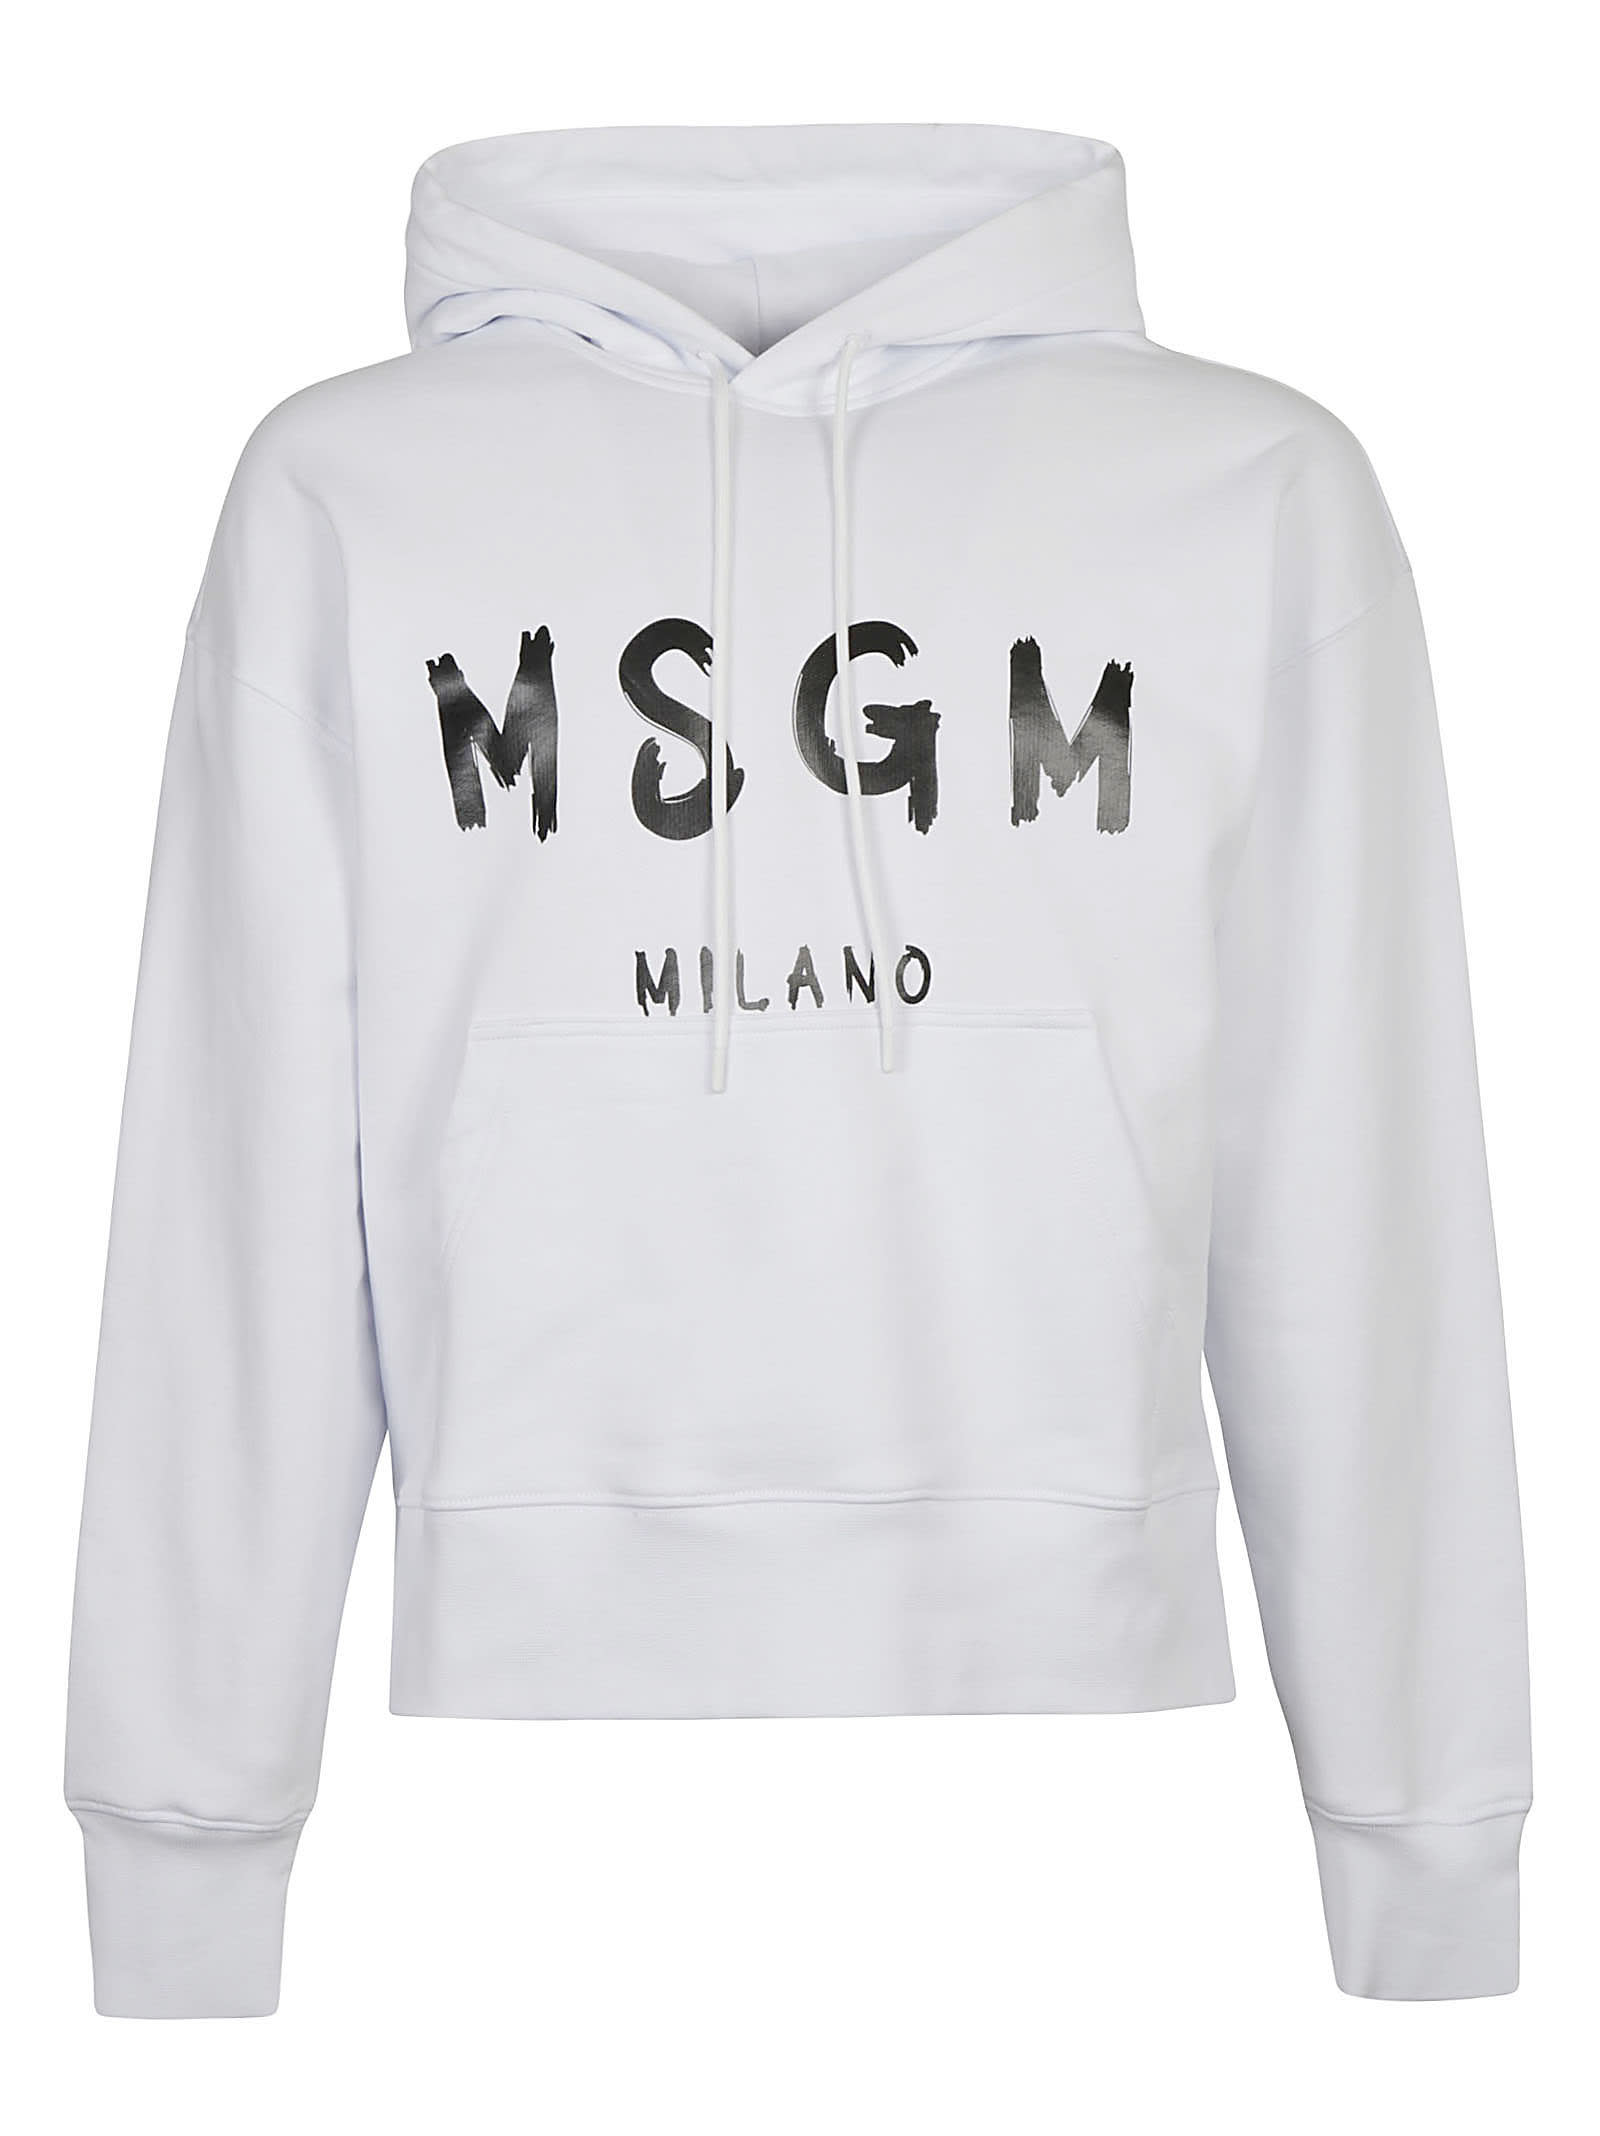 MSGM Milano Logo Hoodie